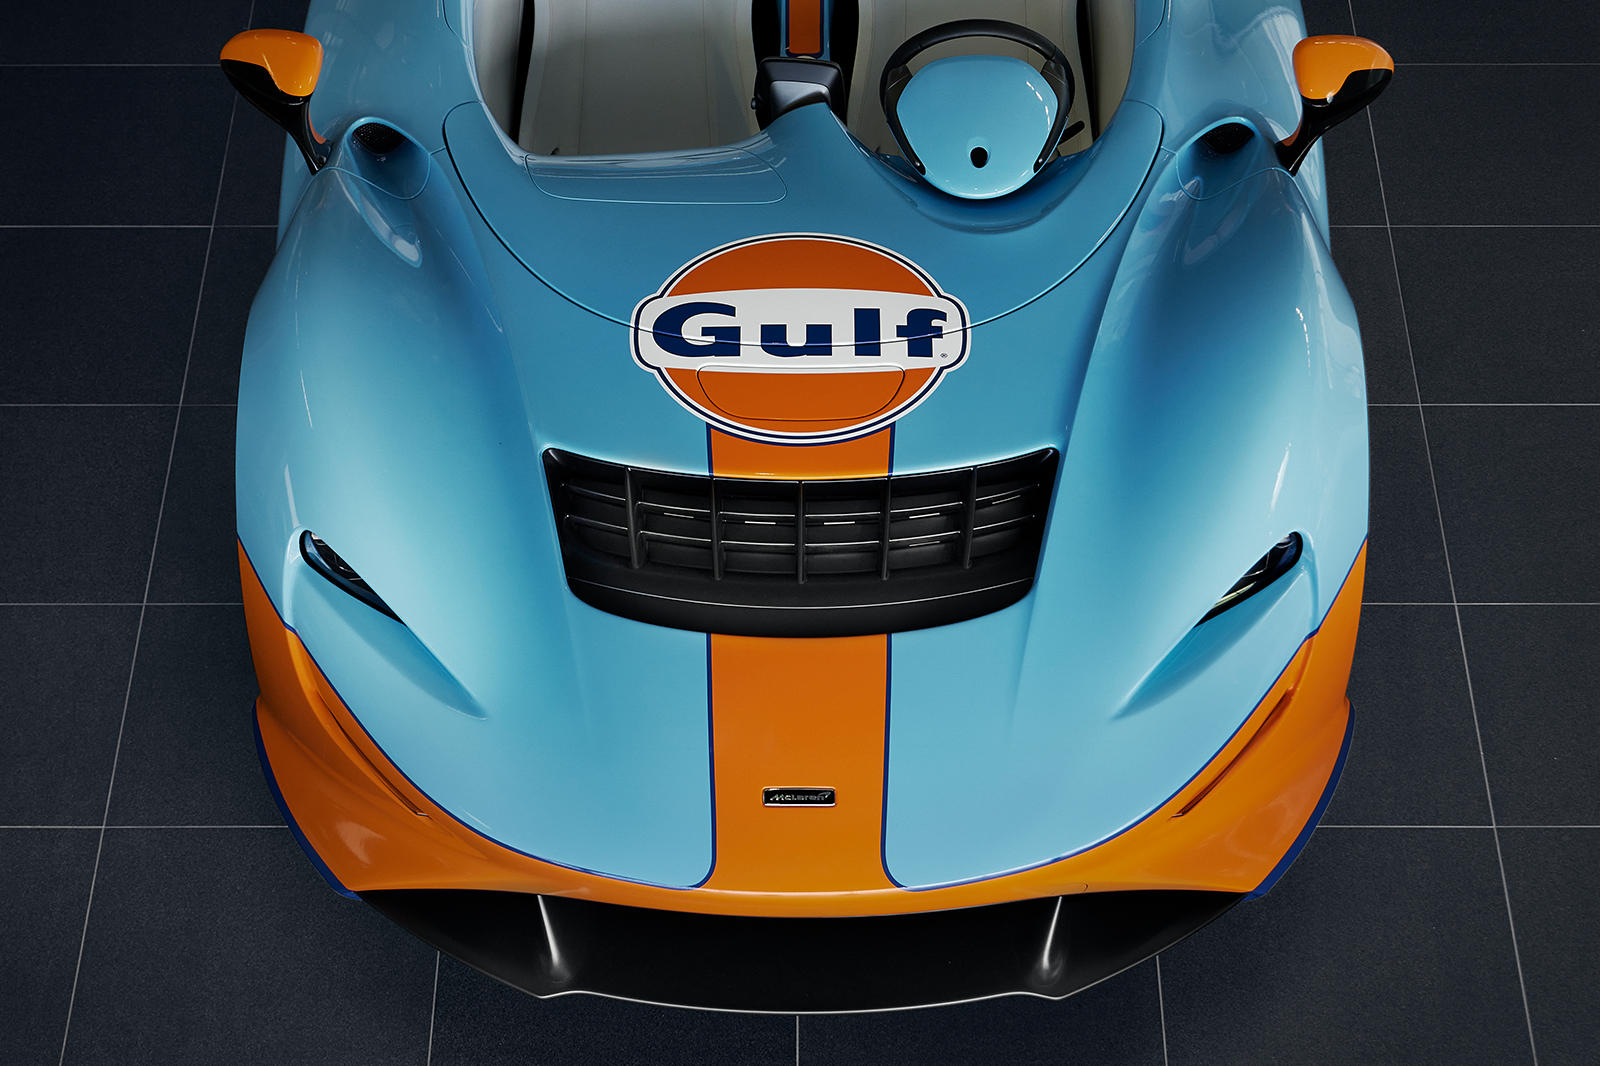 Хотя MSO предложит клиентам множество вариантов персонализации, версия с ливреей Gulf, представленная здесь, выглядит фантастически: оранжевая линия посередине кузова дополняет основной синий цвет.